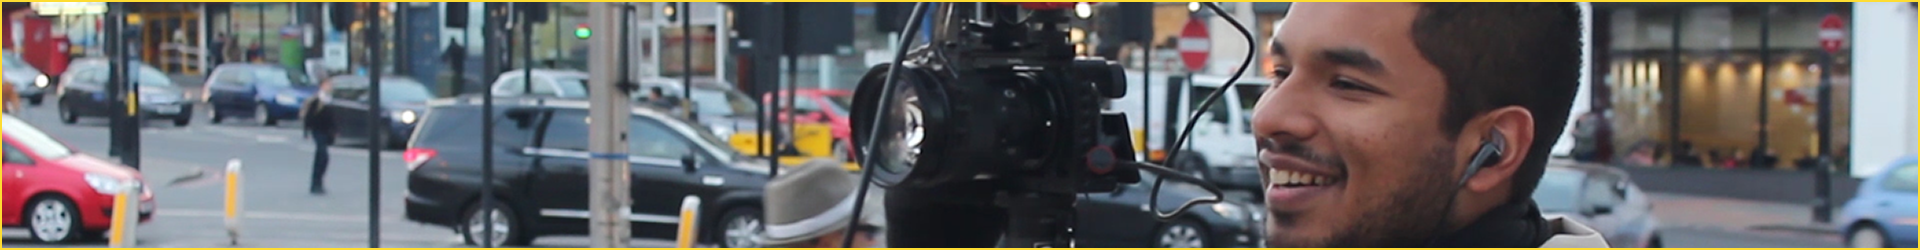 A WinkBall videographer filming